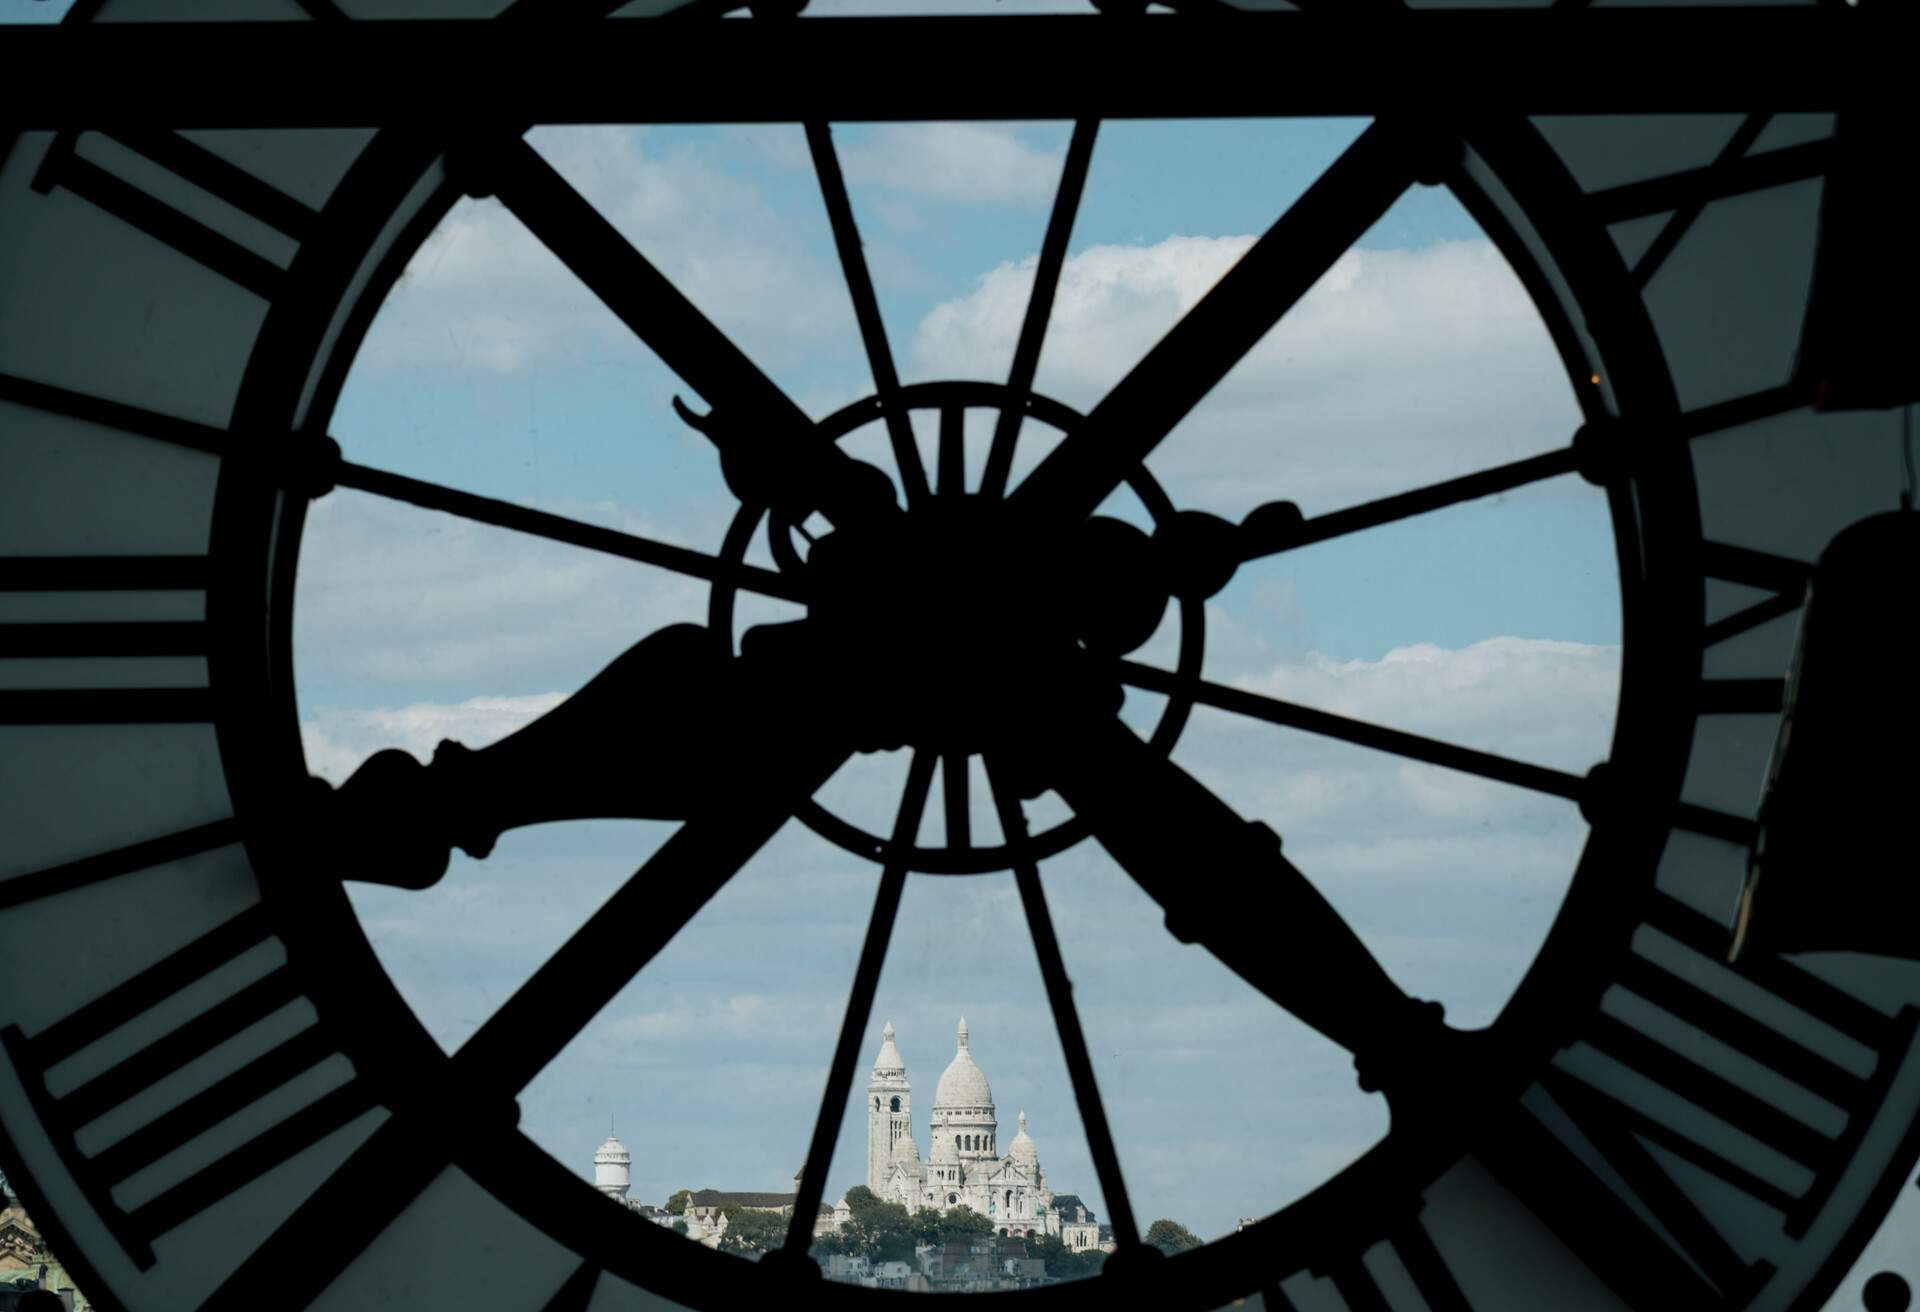 France, Paris, Close-up of clock with Basilique du Sacre Coeur in distance